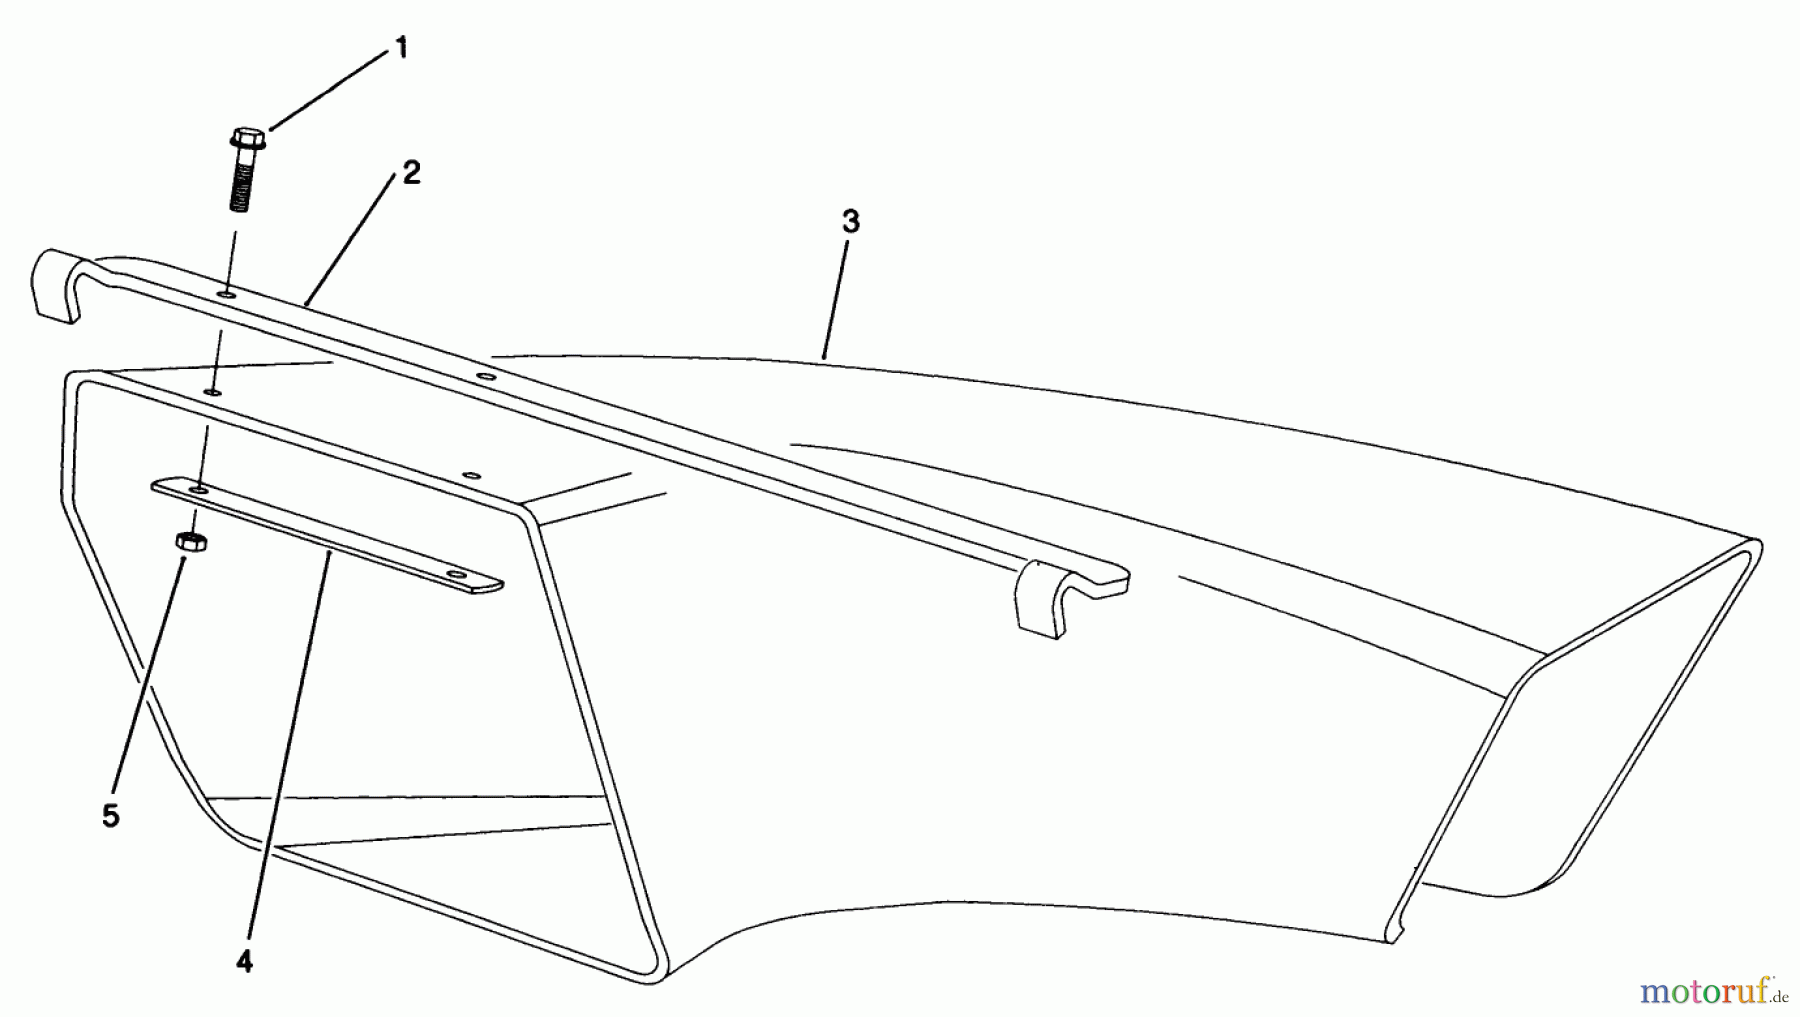  Toro Neu Mowers, Walk-Behind Seite 2 22581 - Toro Lawnmower, 1991 (1000001-1999999) SIDE DISCHARGE CHUTE MODEL NO. 59112 (OPTIONAL)